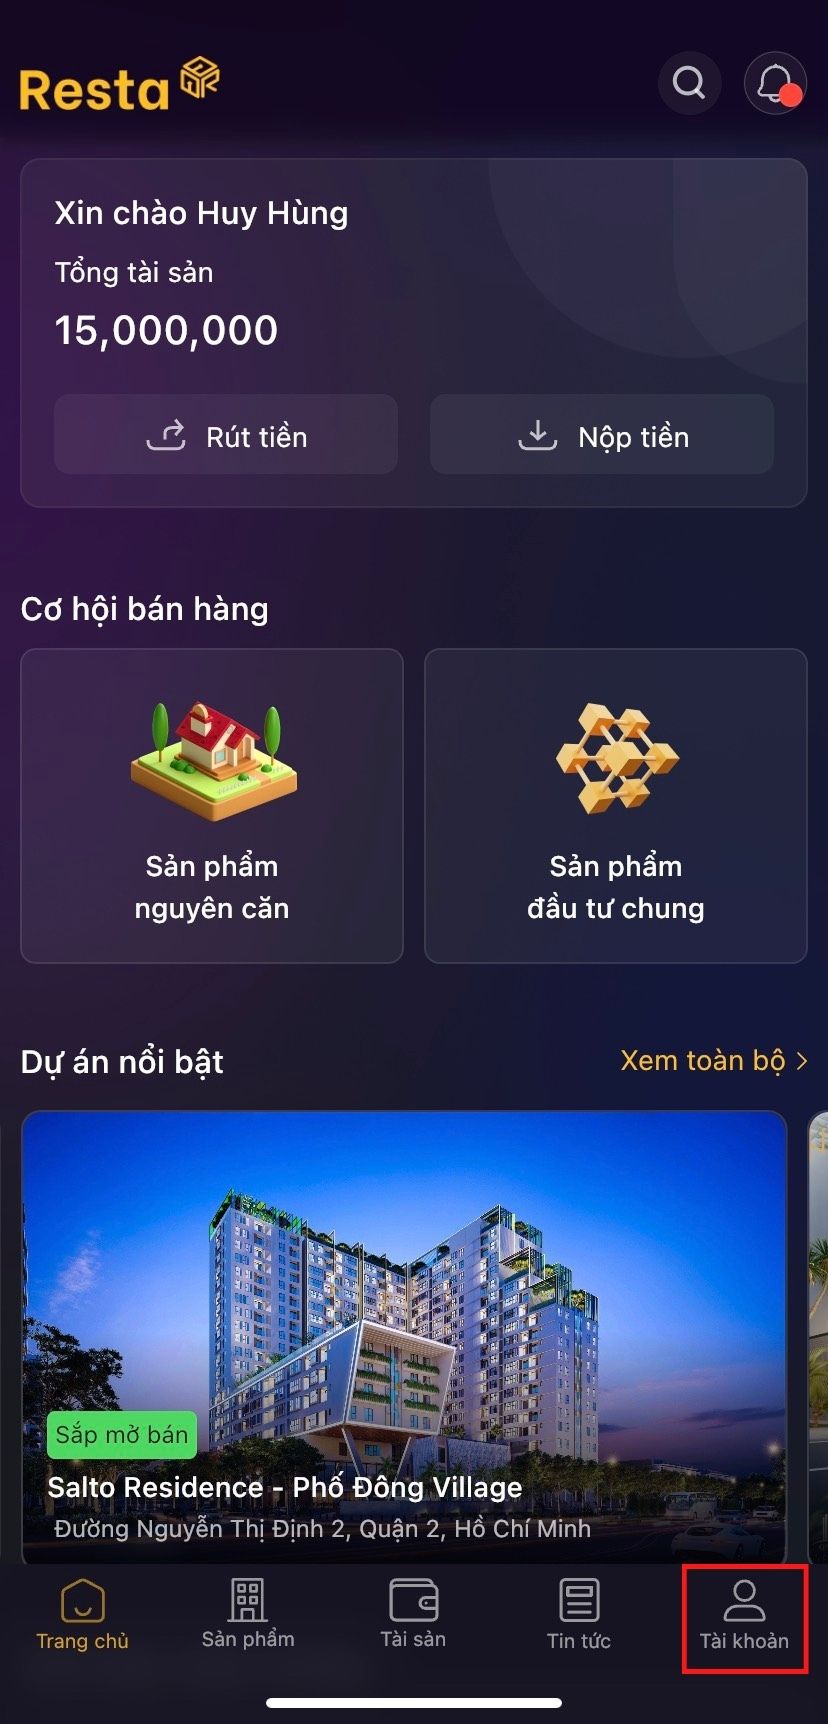 Huong-dan-dang-ky-va-lay-ma-OTP-tren-app-Resta-1